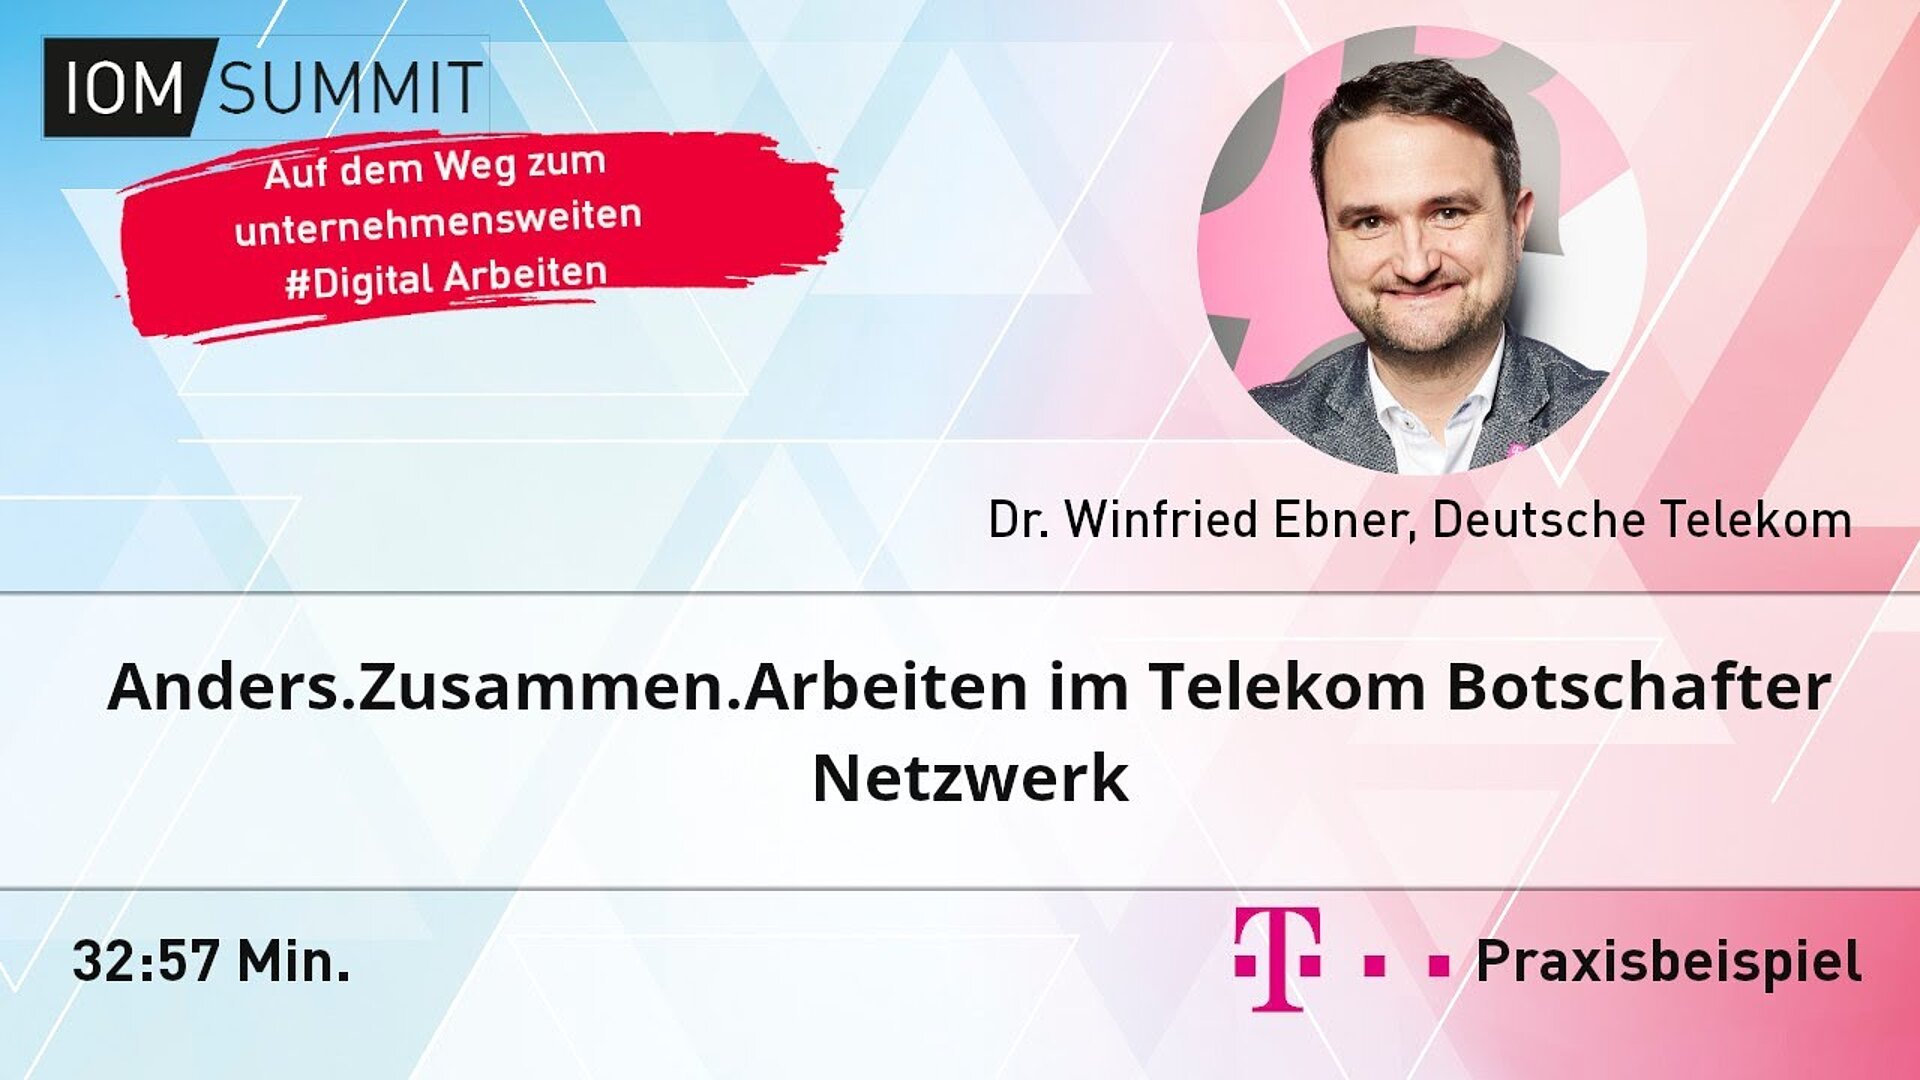 Praxisbeispiel: Anders.Zusammen.Arbeiten im Telekom Botschafter Netzwerk